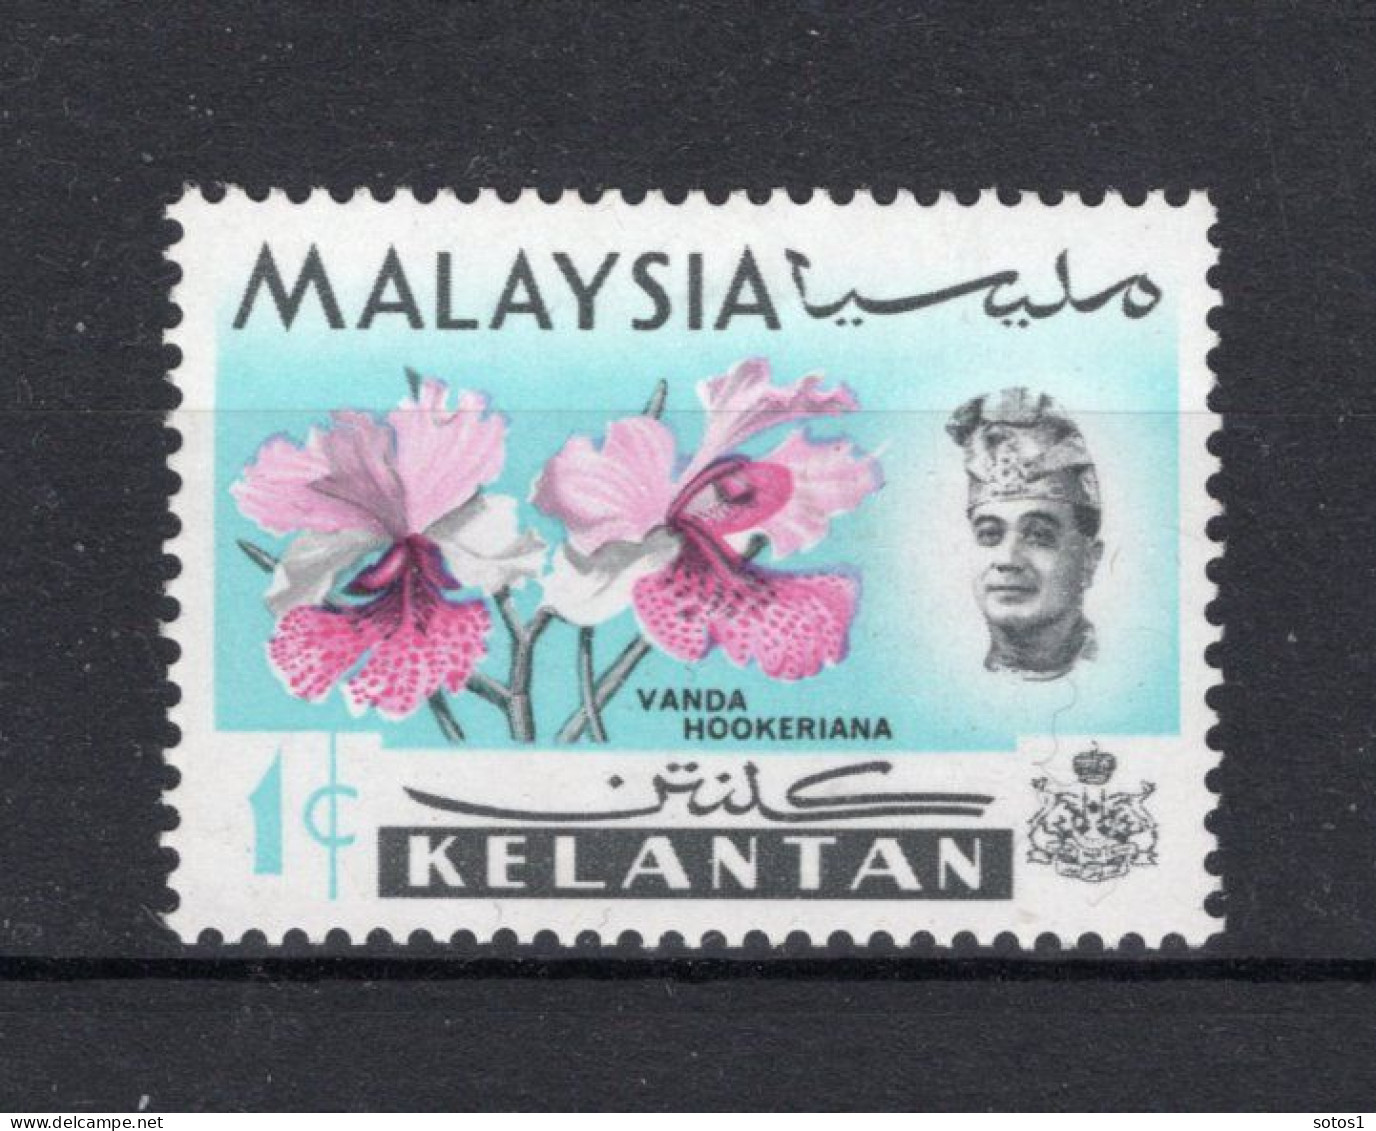 MALAYSIA Yt. KL97 MH KELANTAN 1965 - Kelantan